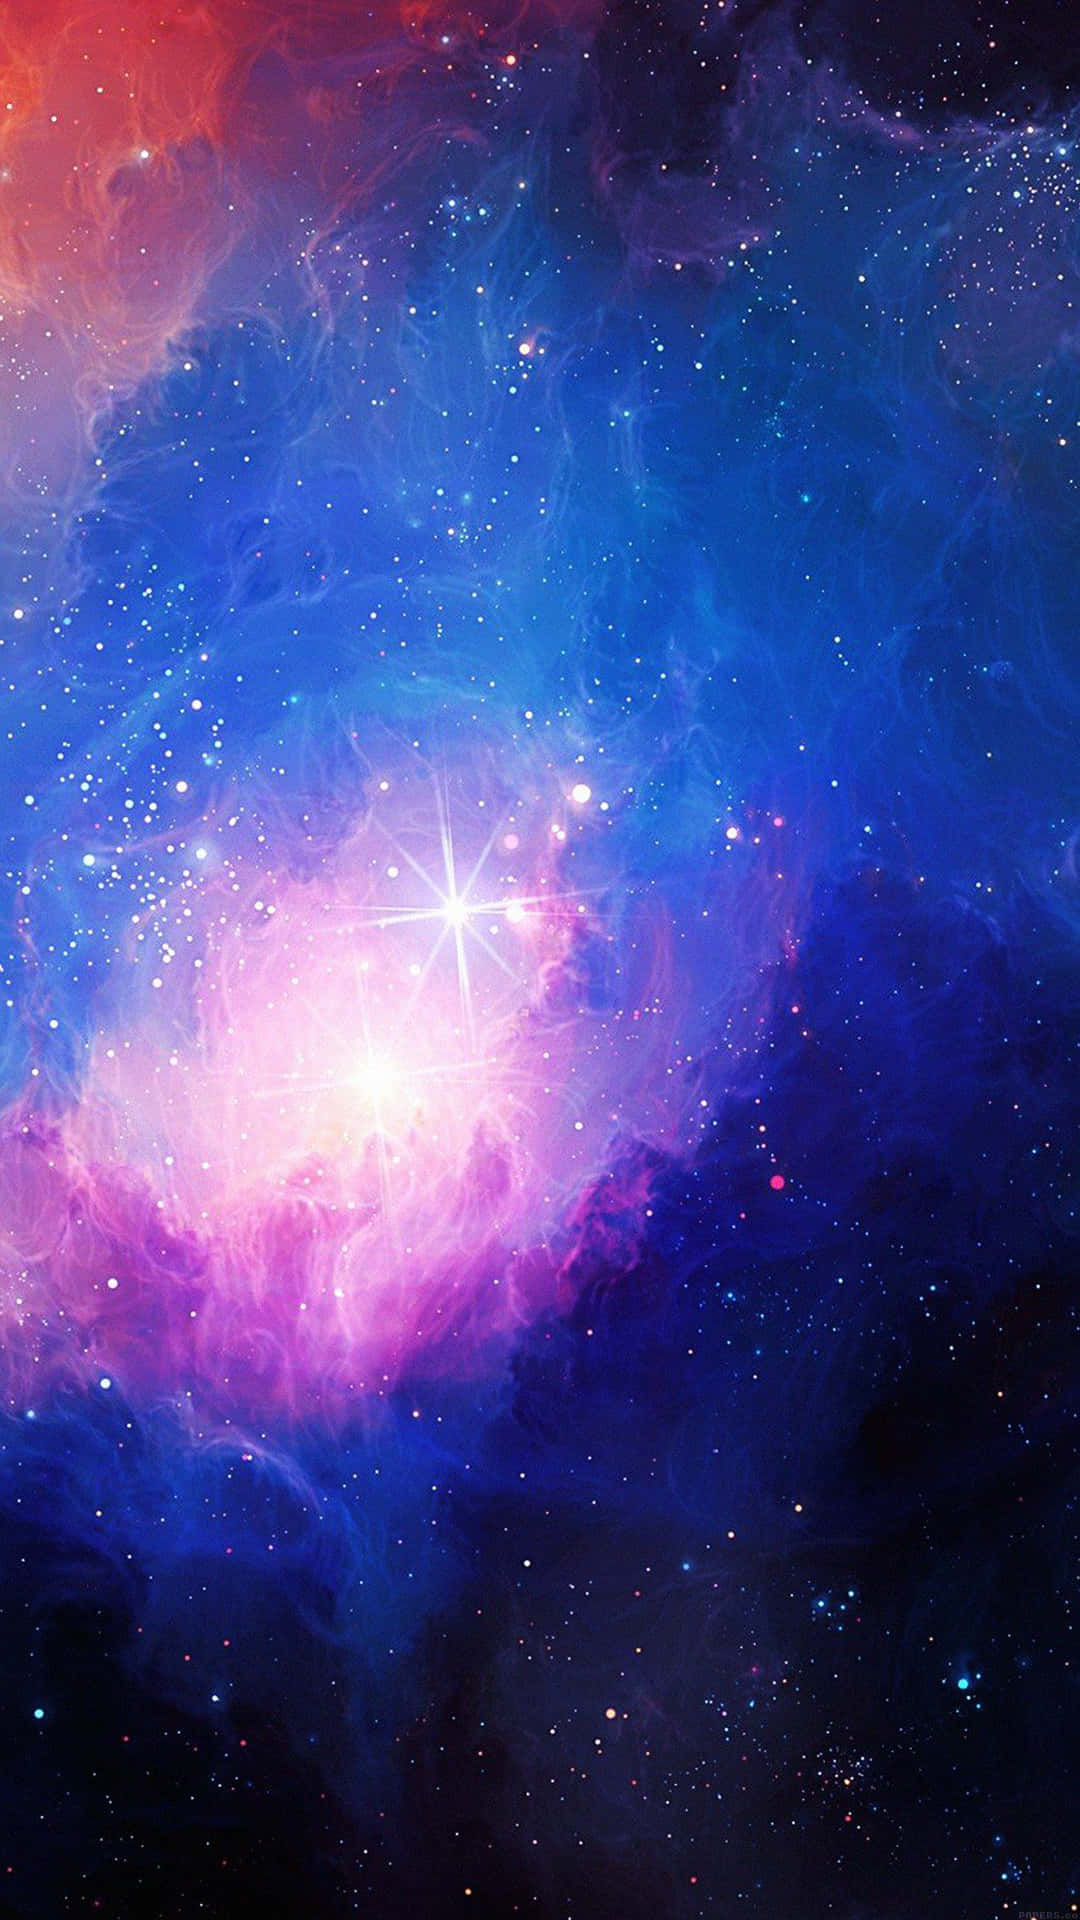 Unavista Exótica De La Galaxia Sobre Un Cielo Tranquilo Y Fresco En Tonos Azules. Fondo de pantalla